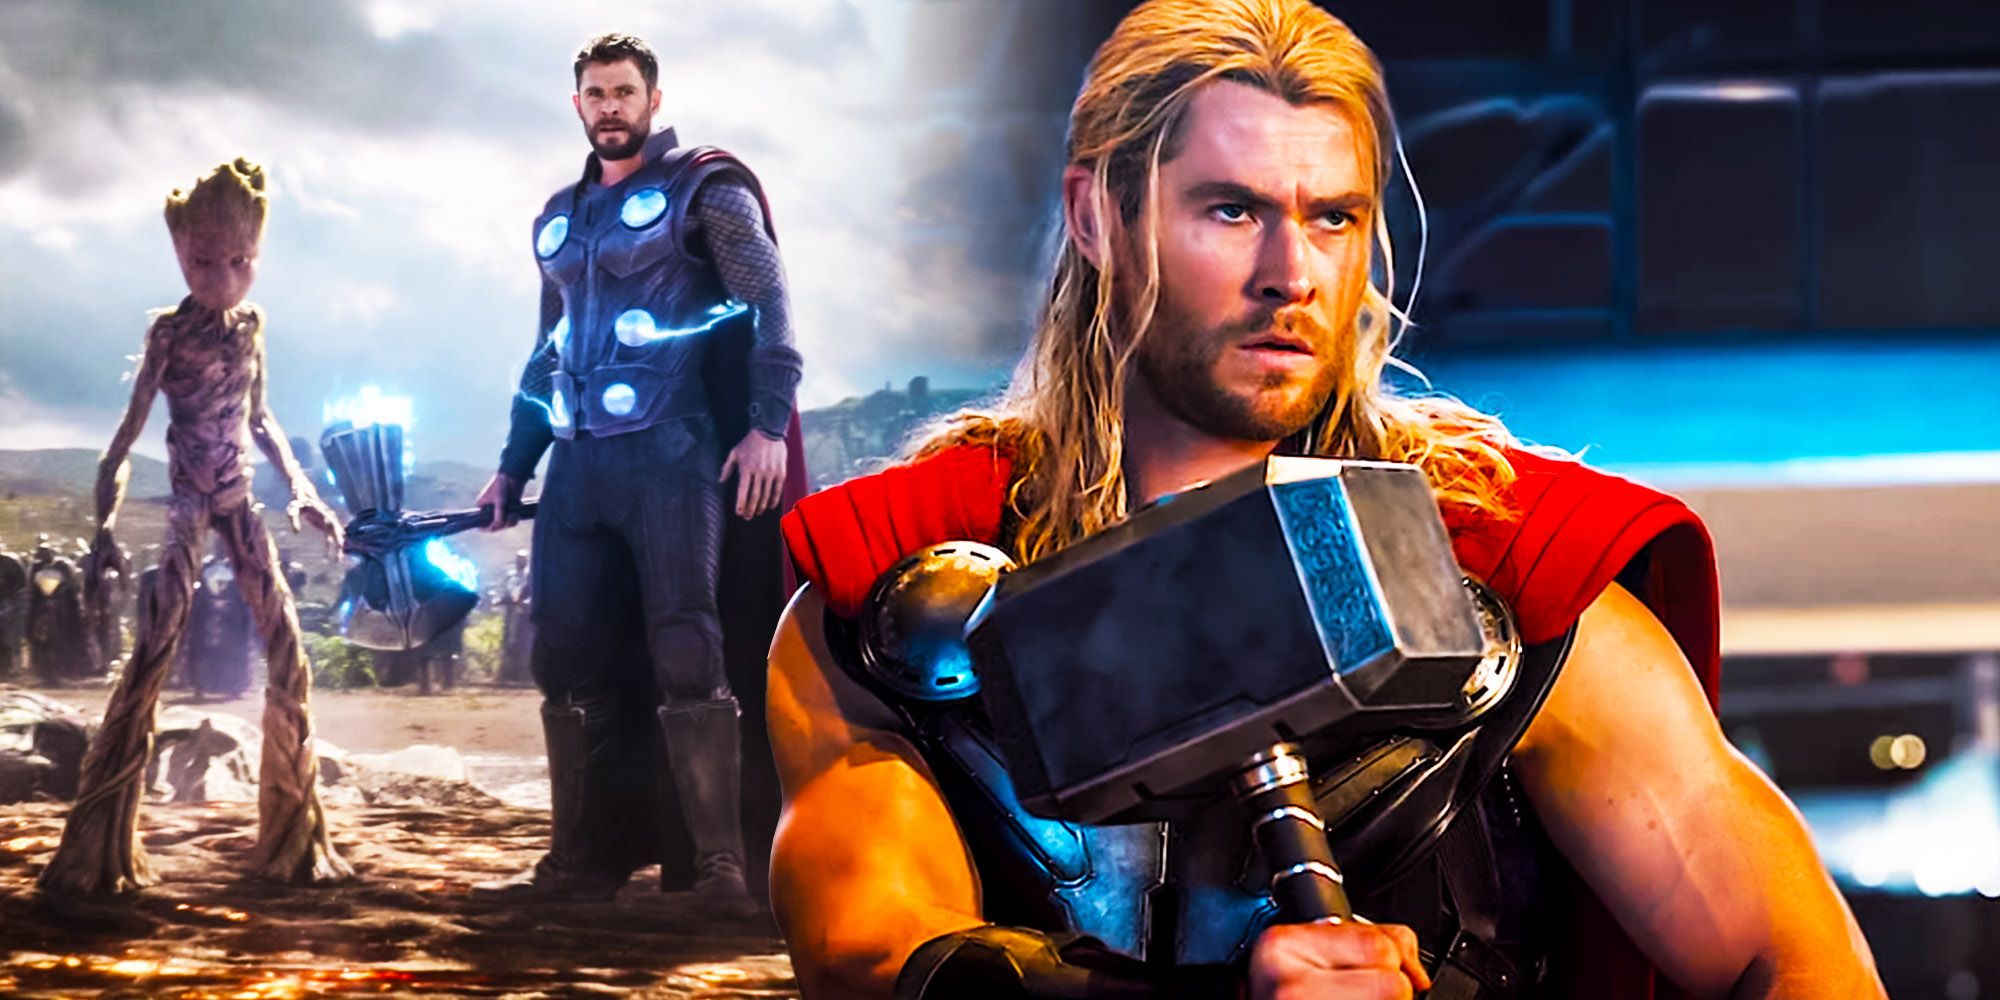 Thor mjolnir and stormbreaker